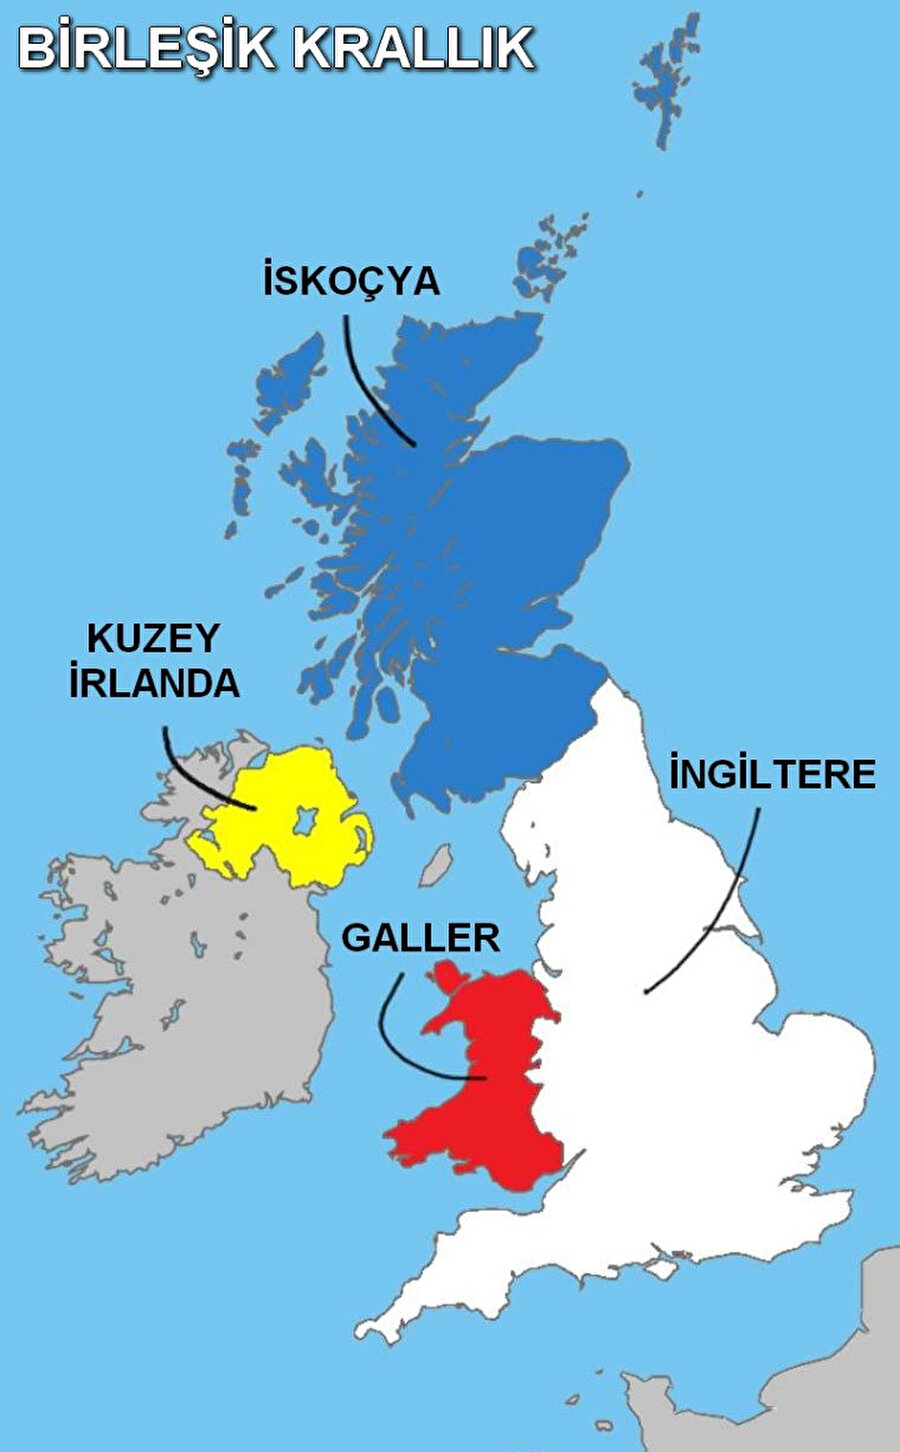 Birleşik Krallık 4 ülkeden oluşuyor. 